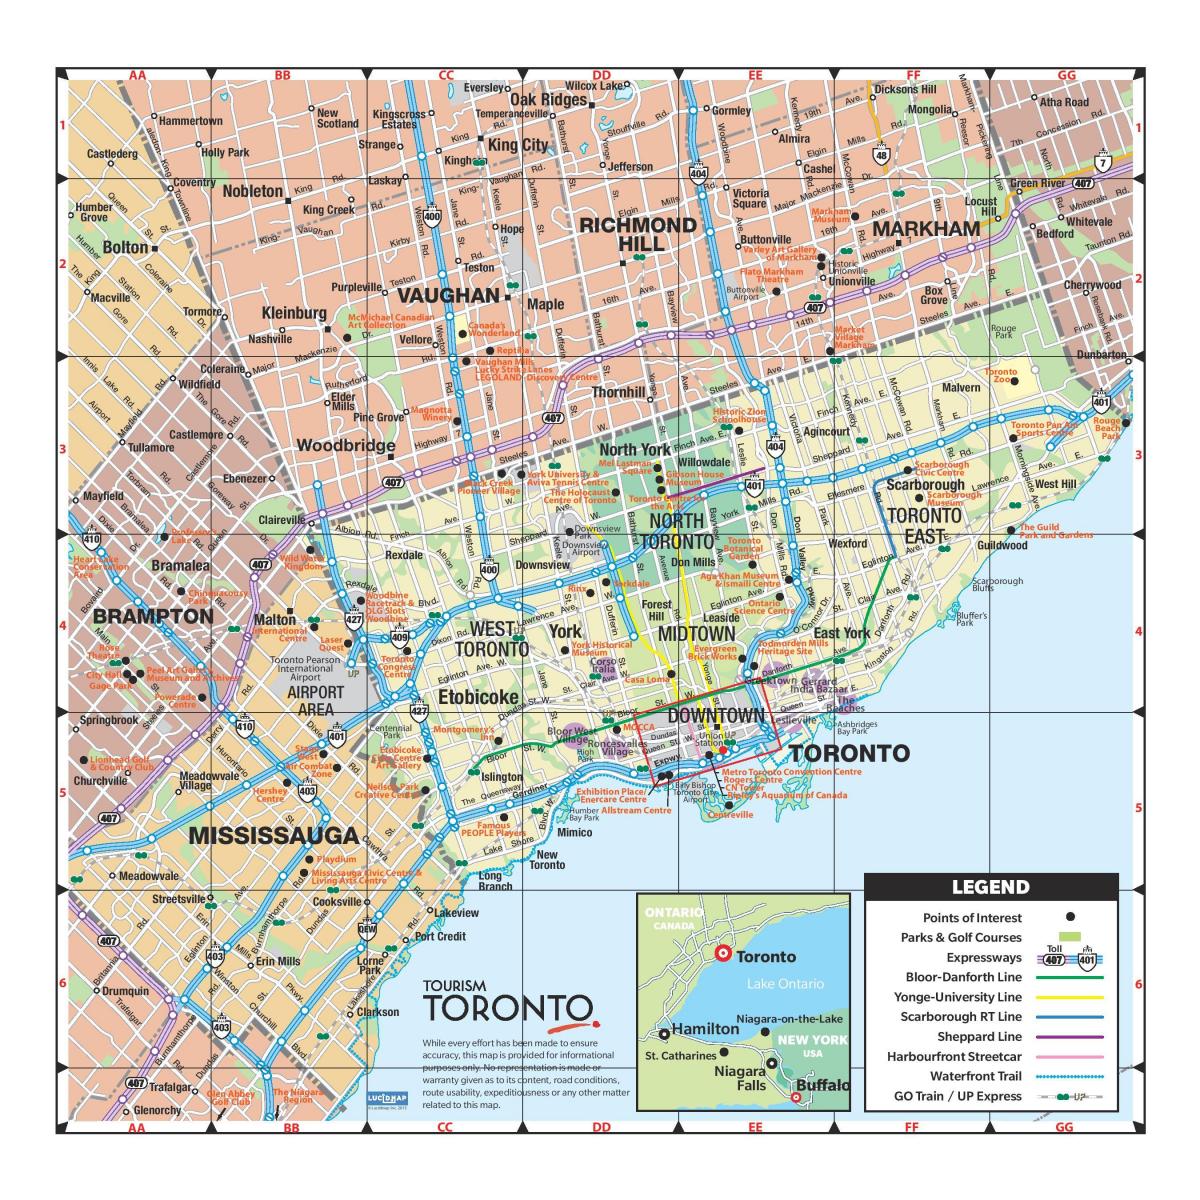 La mappa Turistica di Toronto